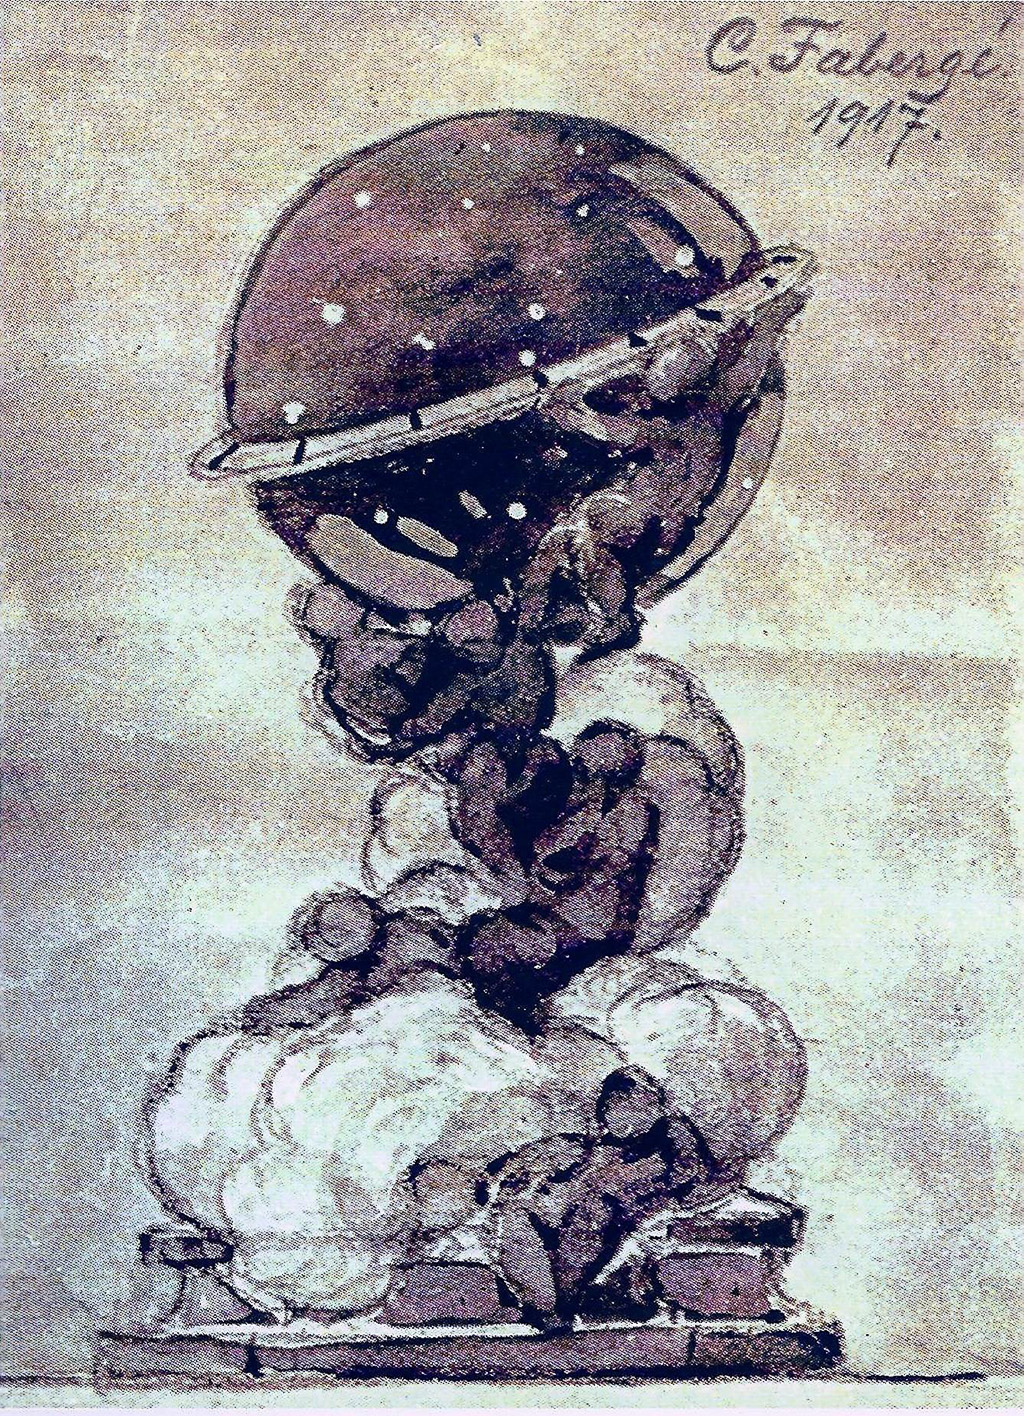 Fabergé Constellation Egg 1917 - Image courtesy of Igor Carl Fabergé Foundation